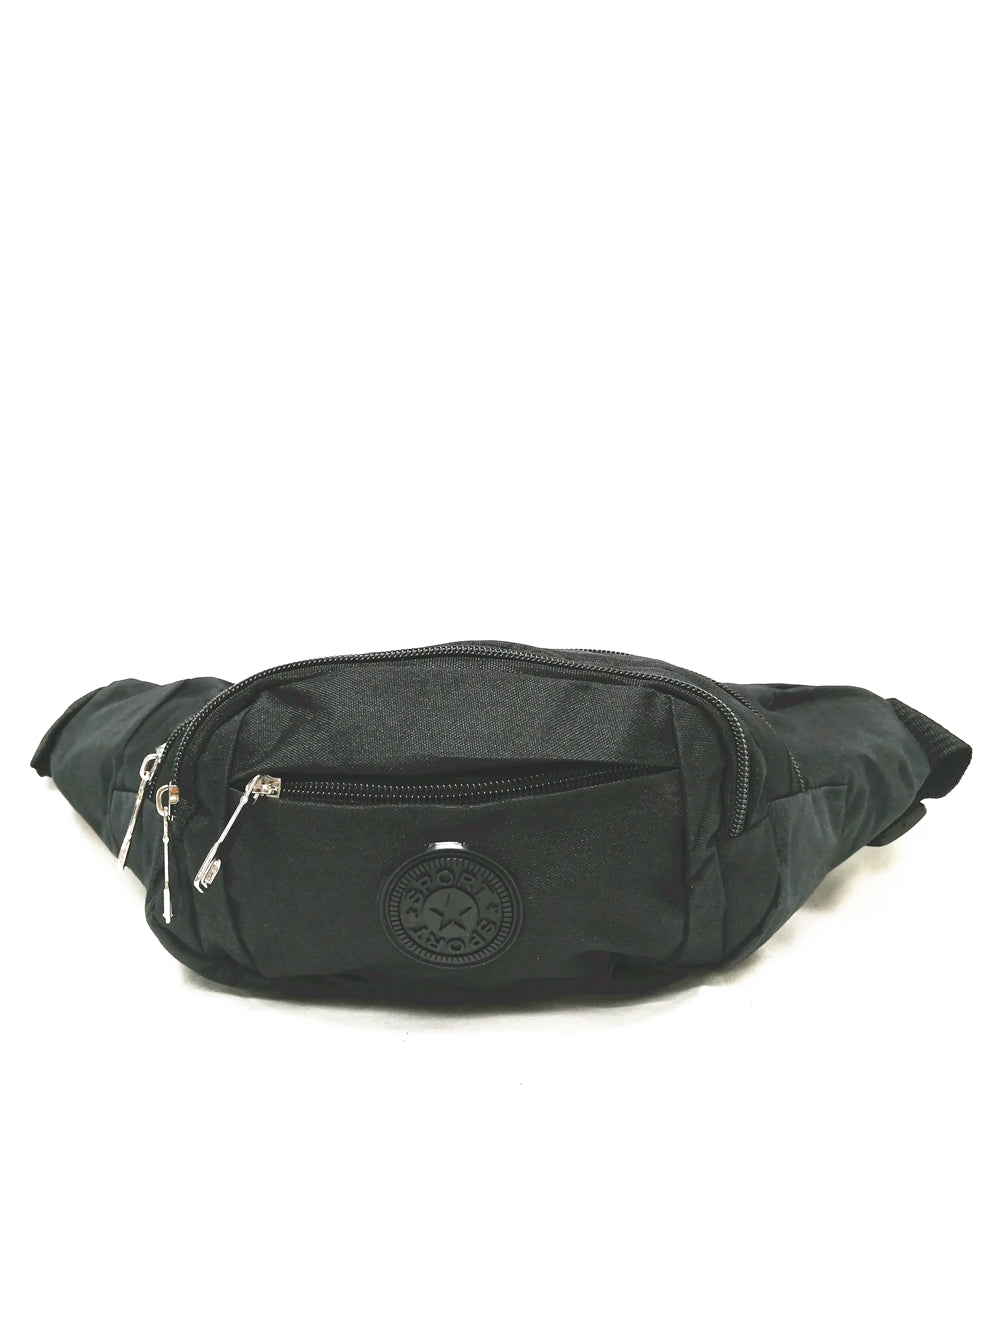 0823  waist bag black